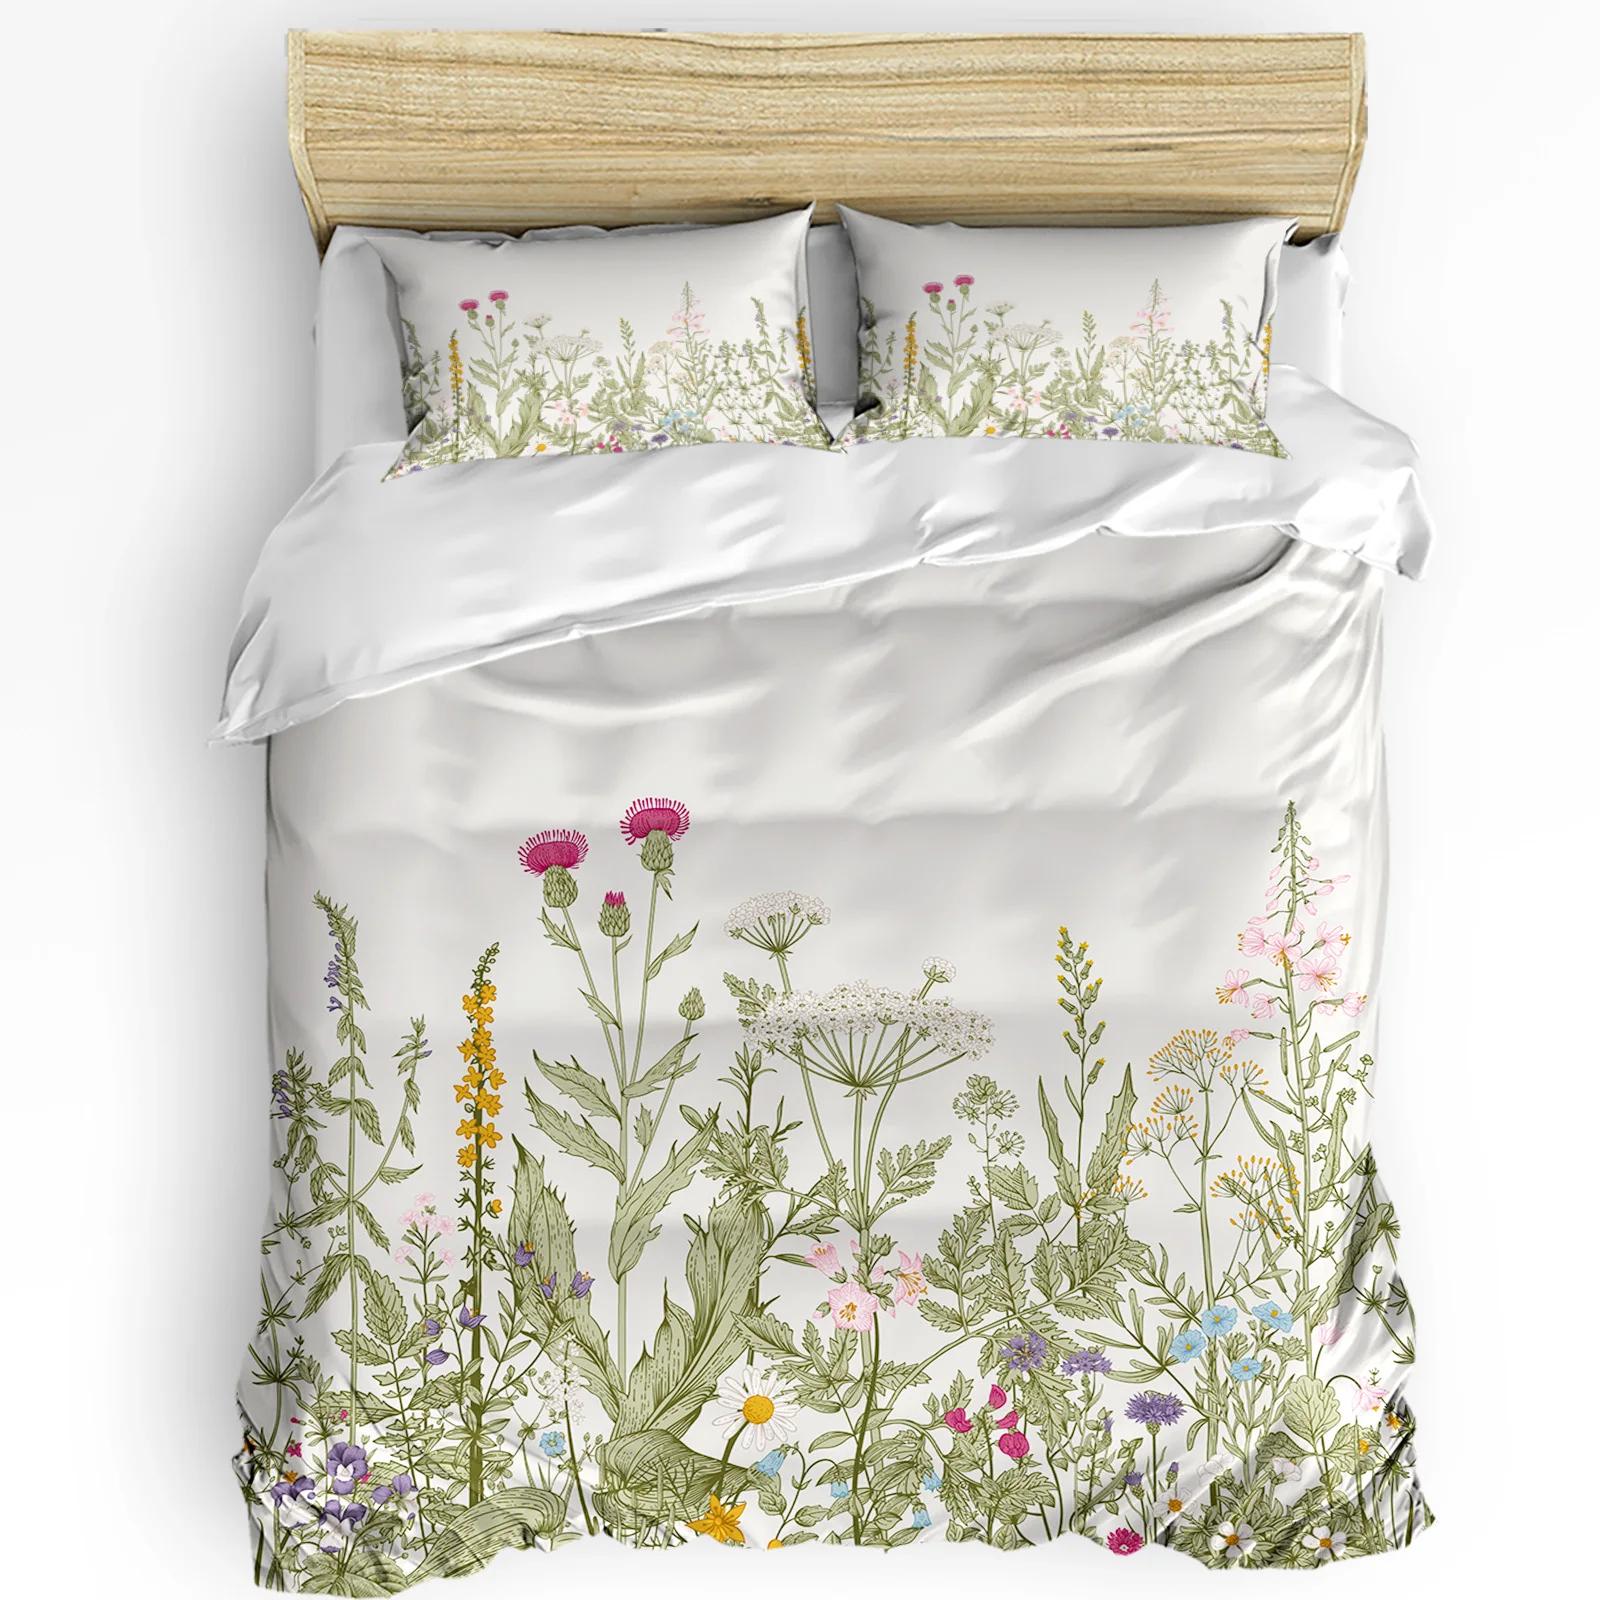 Vintage Herb Plant Flower Duvet CoverPillow Case Custom Comforter 3pcs Bedding Set Quilt Cover Double Bed Home Texti